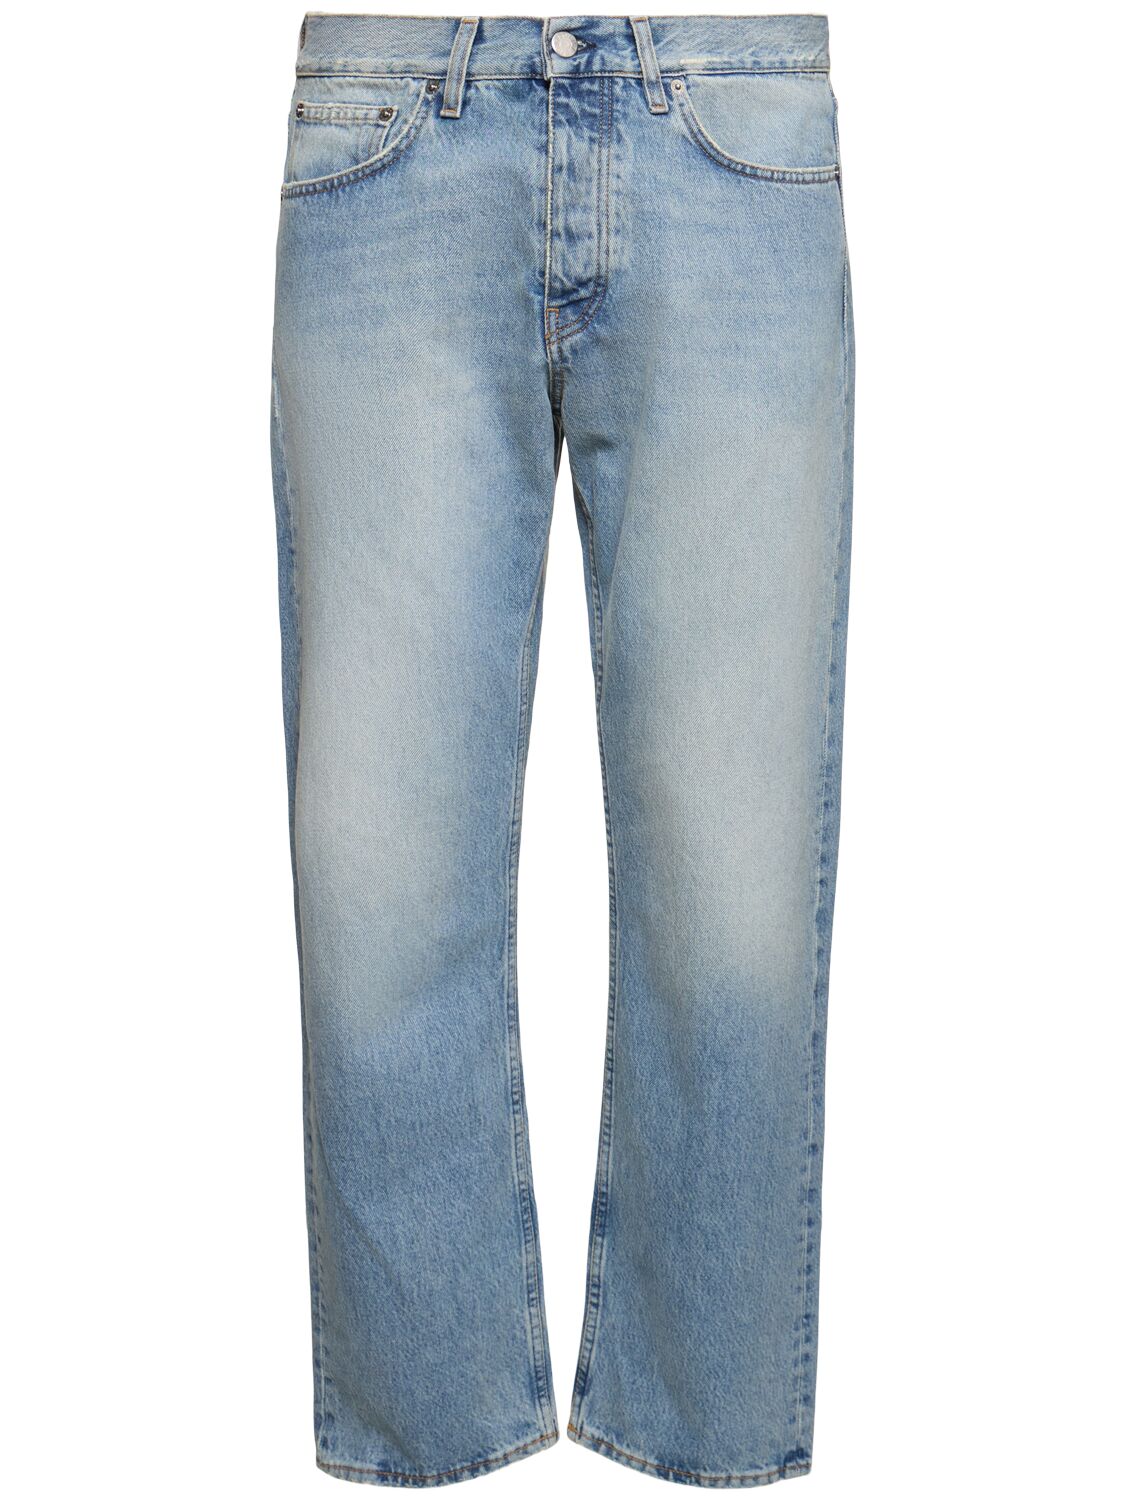 Image of L32 Natural Vintage Standard Jeans